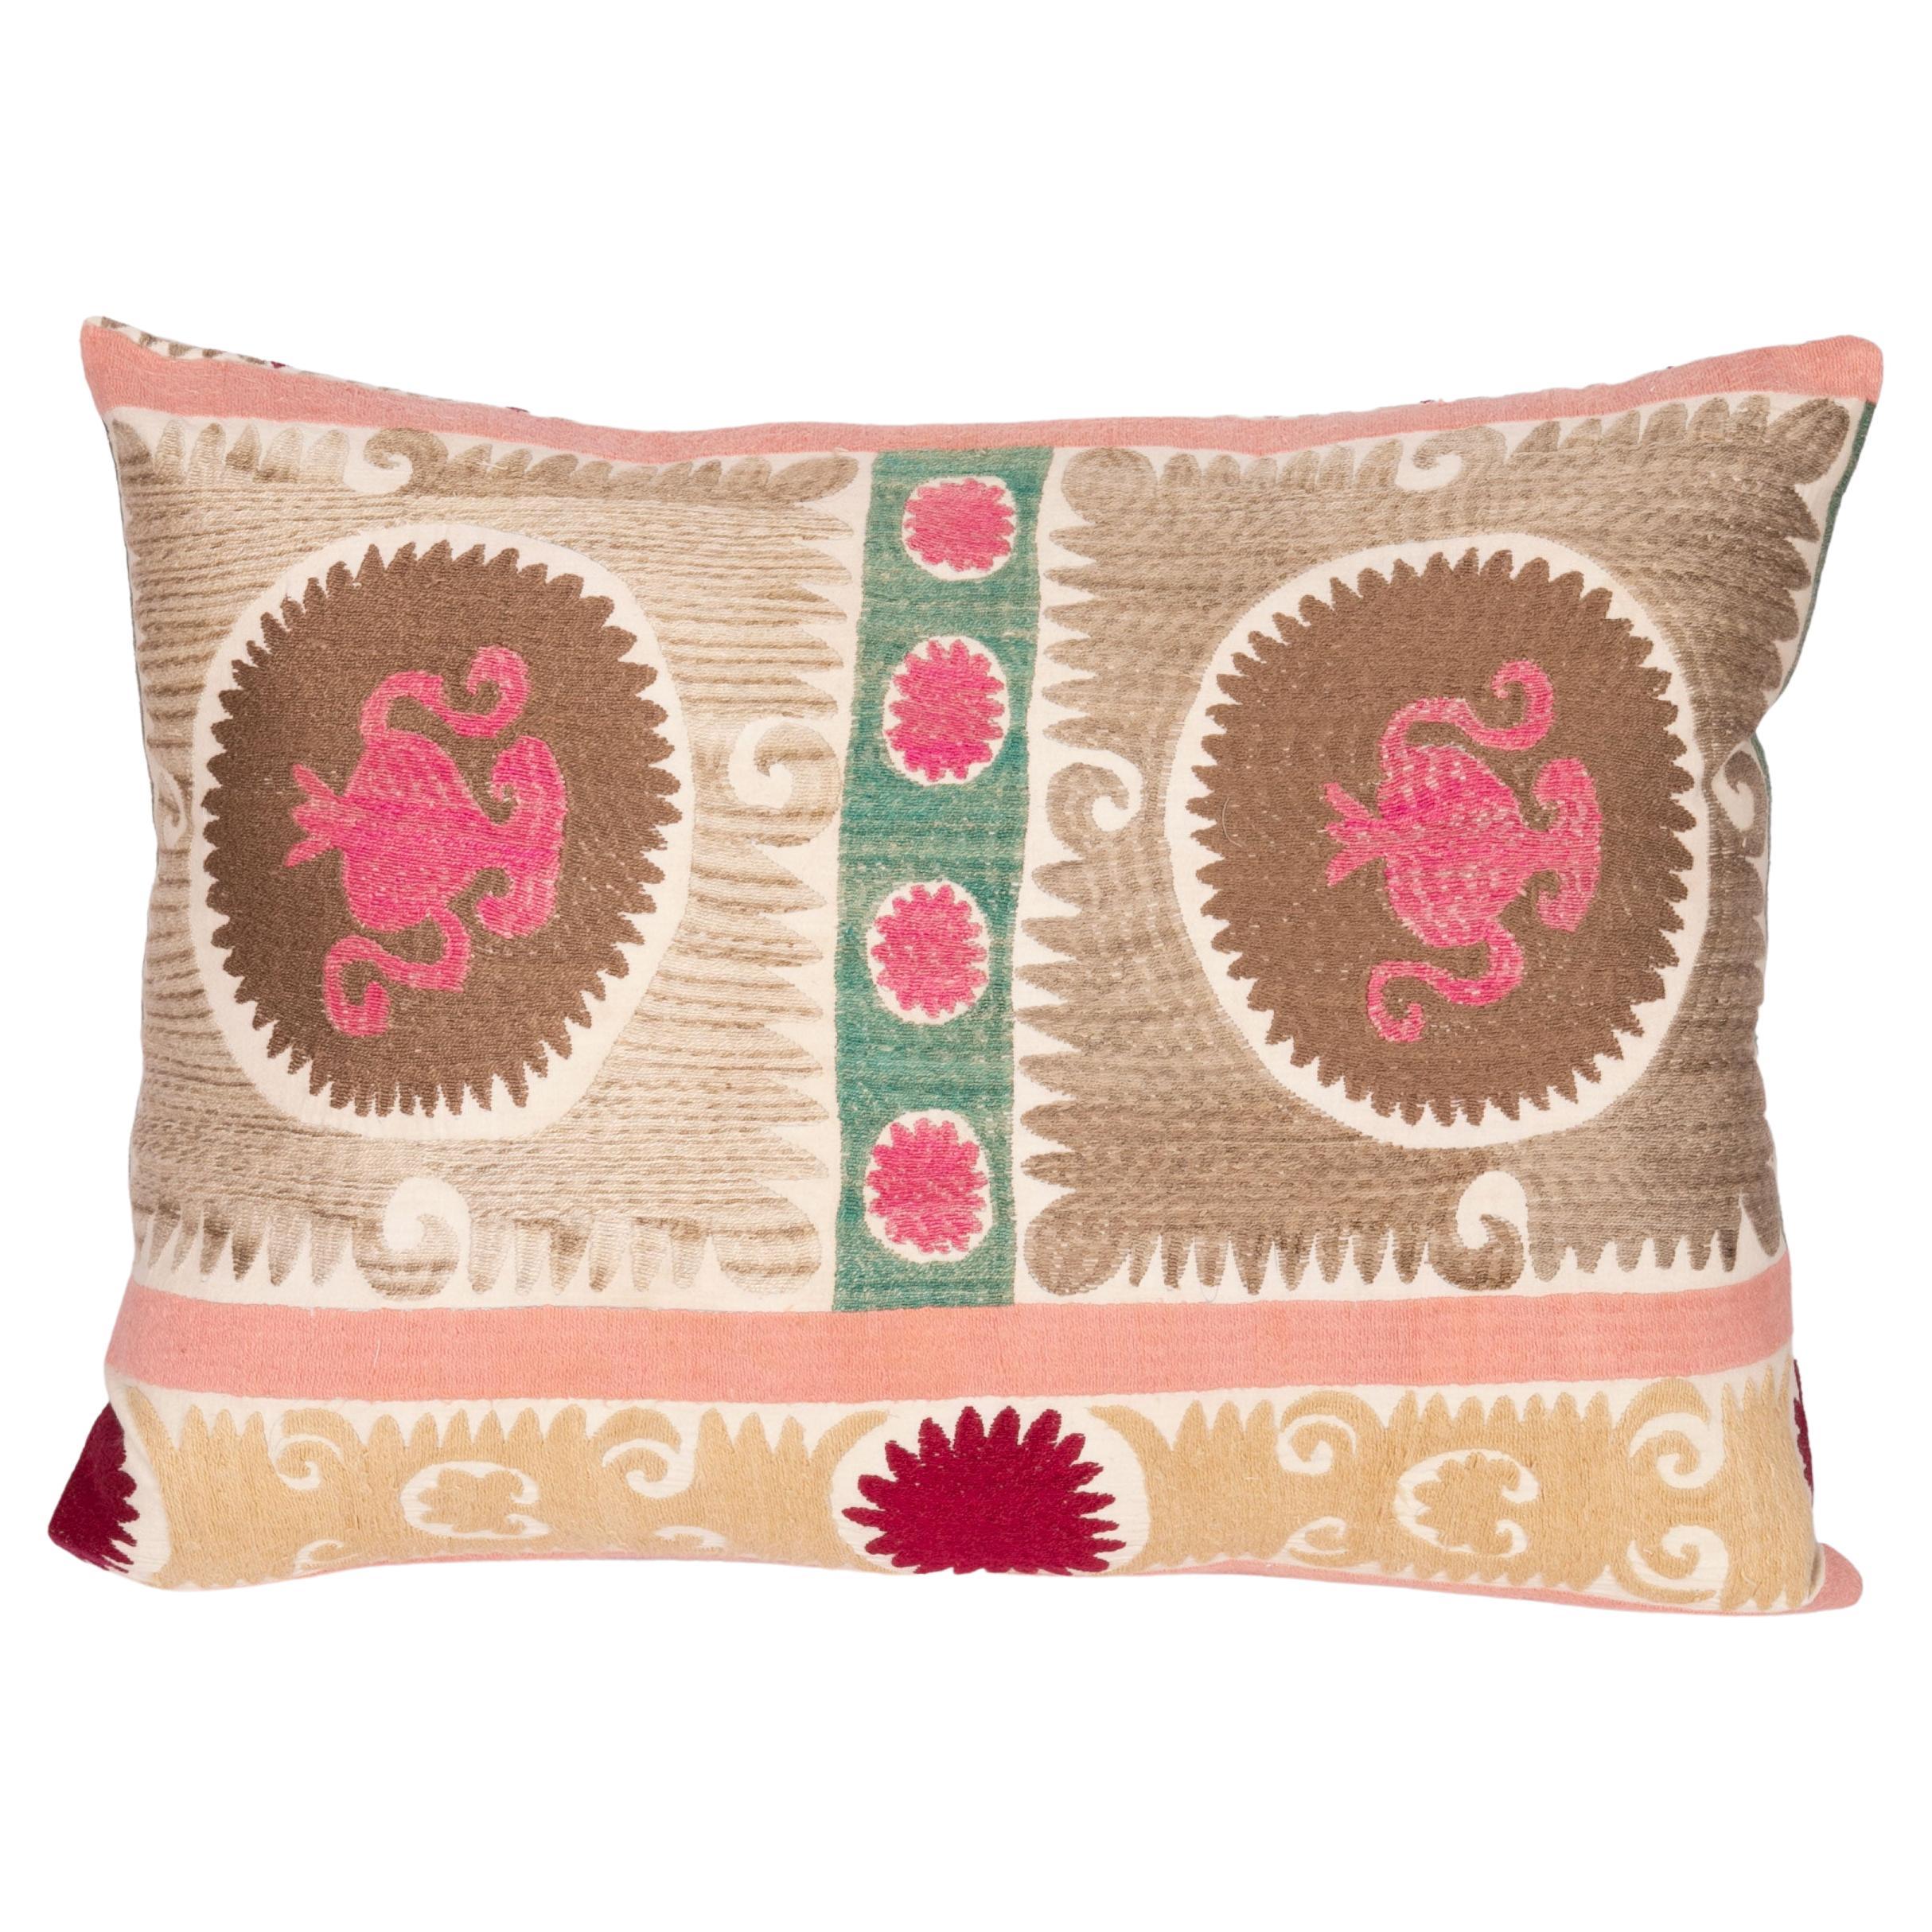 Pillows,Cushions,Pillow Cover,Embroidery Suzani Pillow Suzani cushion,embroidery pillows,cotton pillows,handmade pillows,cushion 17x17''